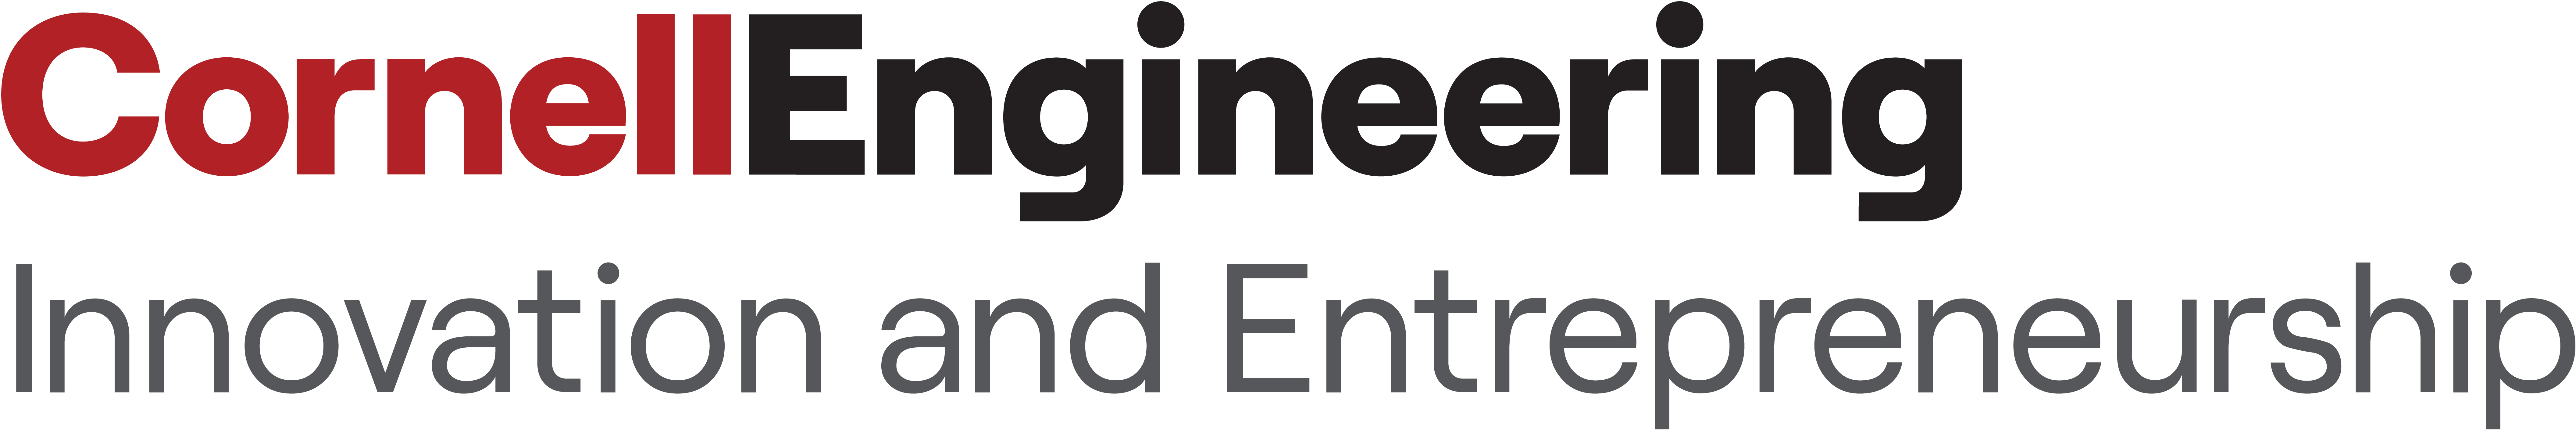 Innovation and Entrepreneurship logo